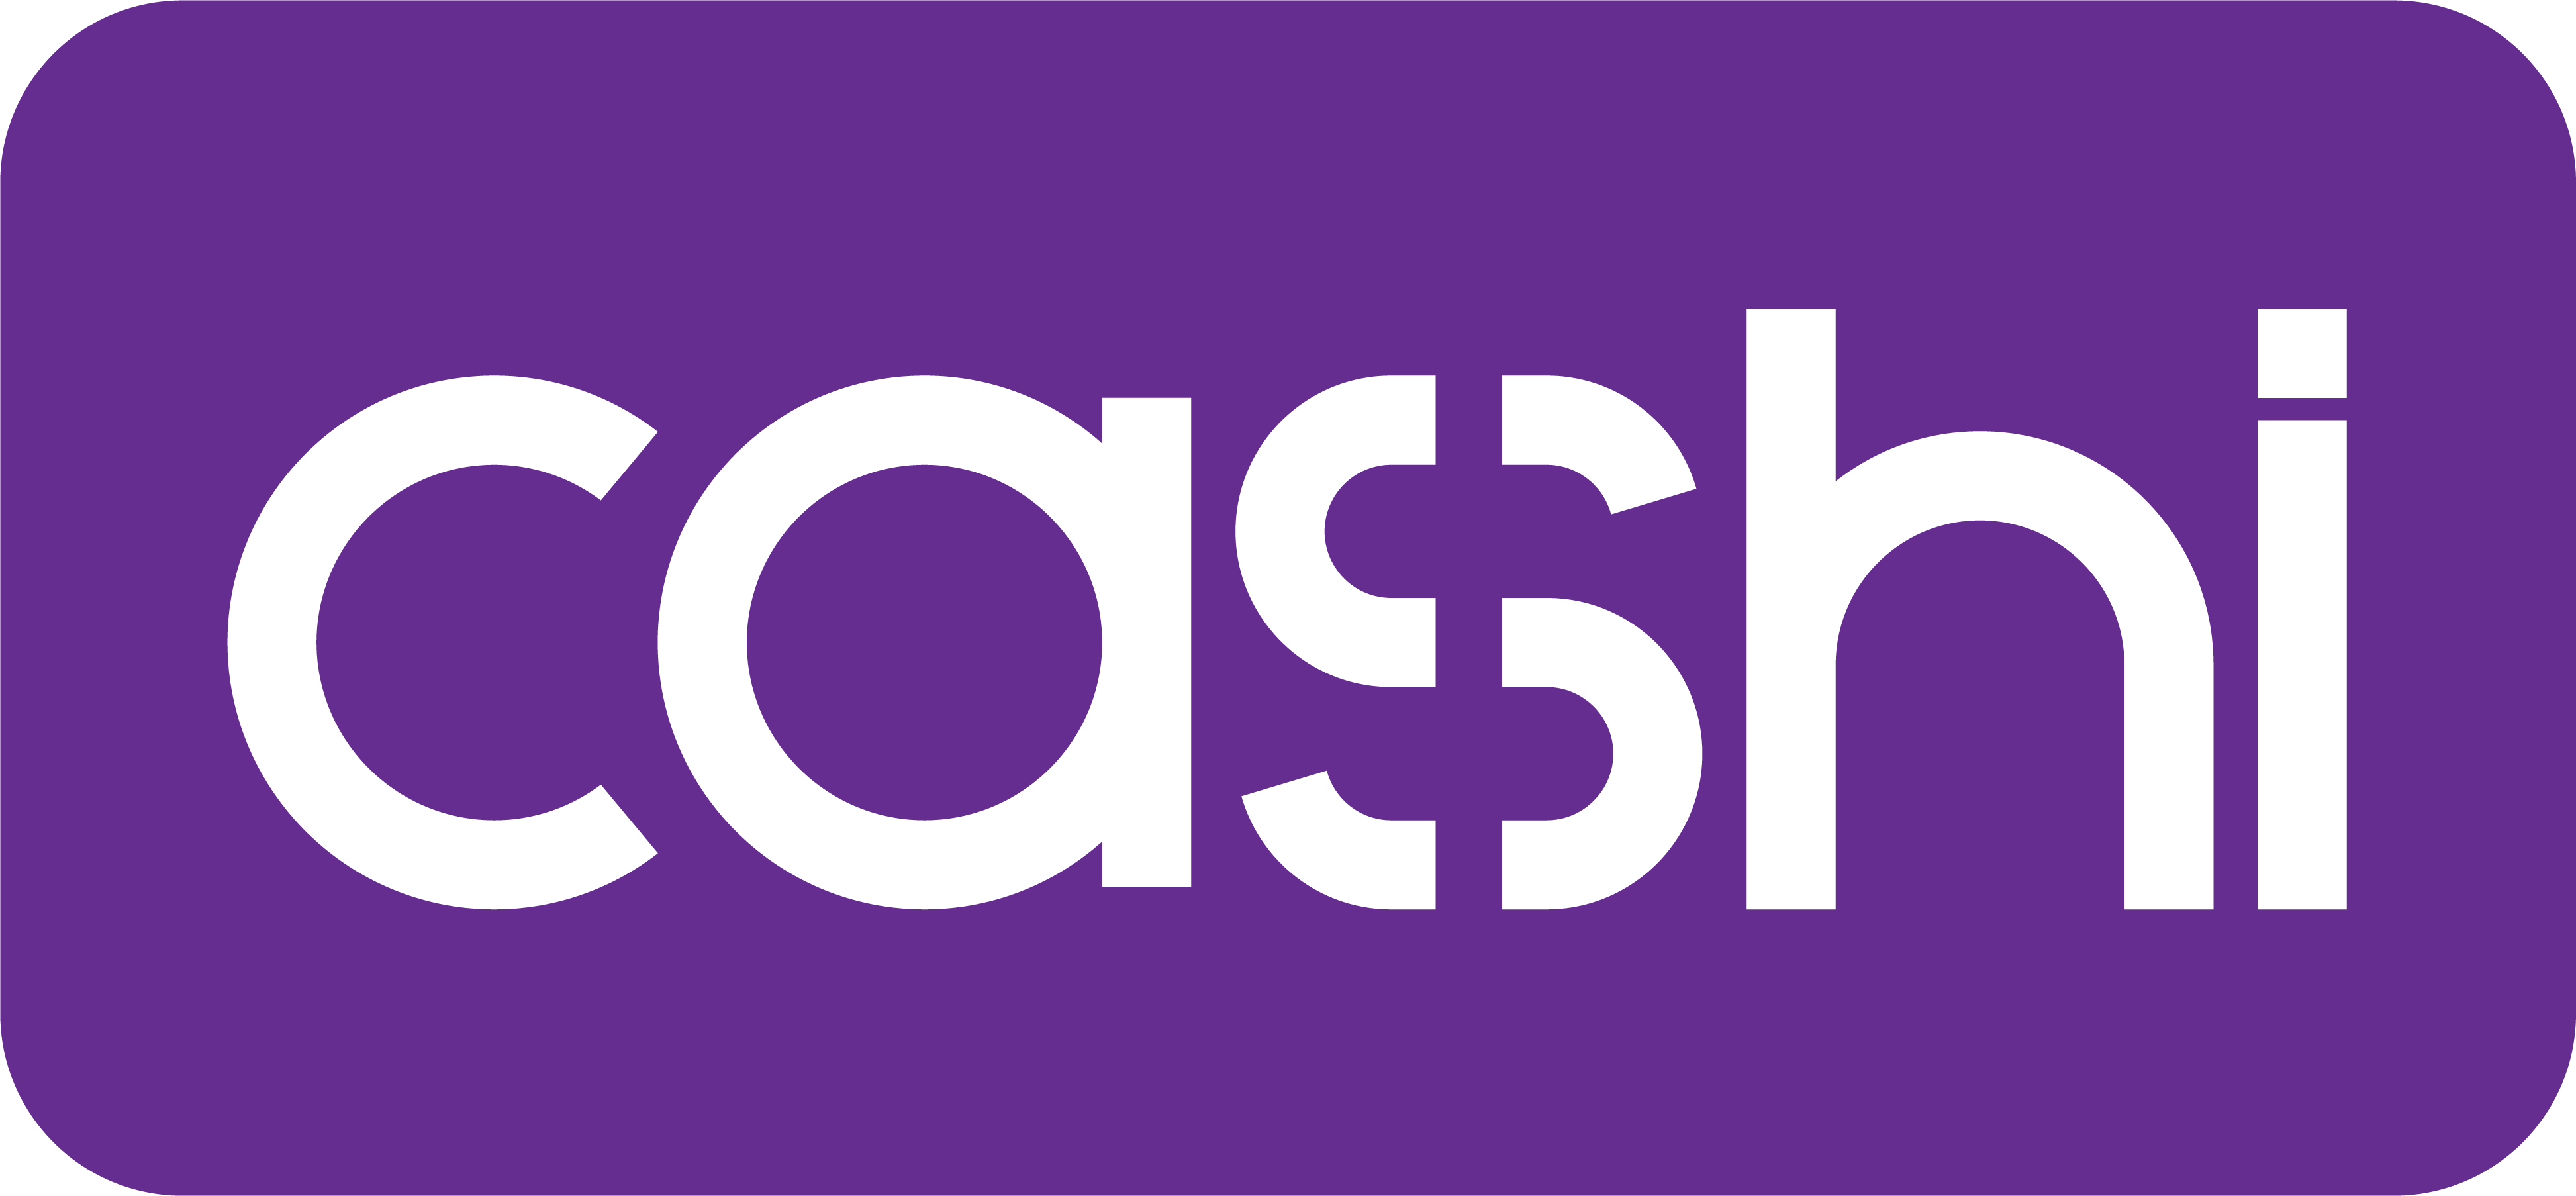 Logo de Cashi